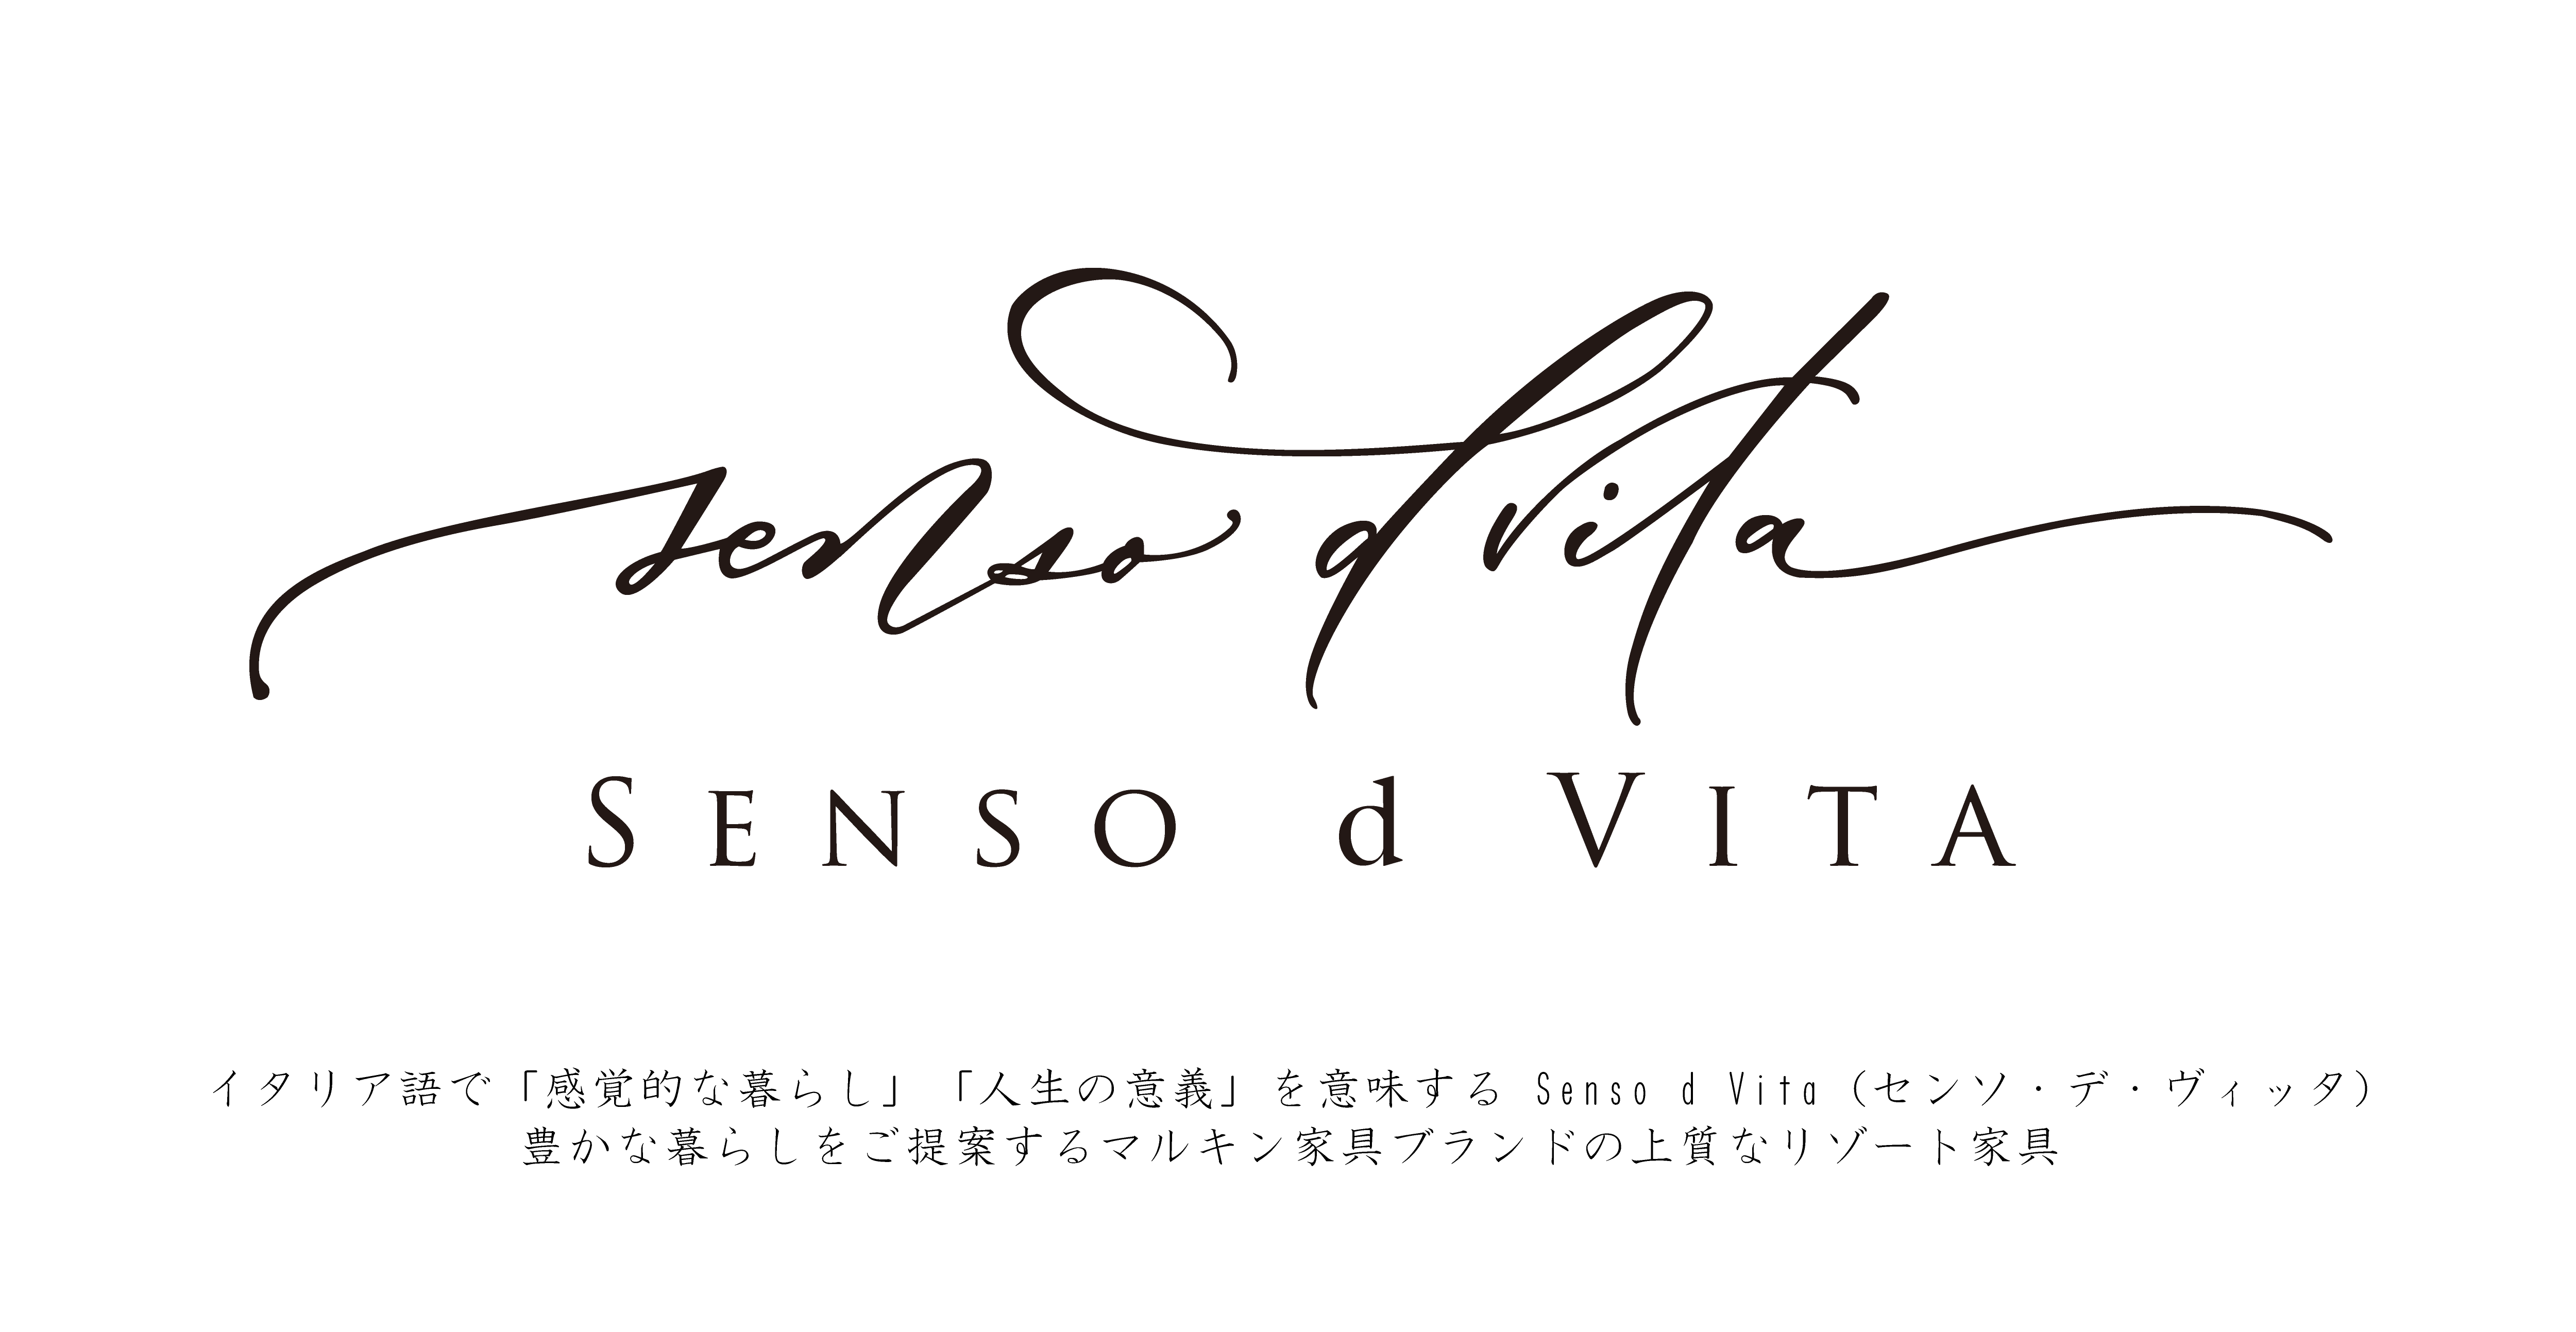 イタリア語で「感覚的な暮らし」「人生の意義」を意味する Senso d Vita (センソ・デ・ヴィッタ)
豊かな暮らしをご提案するマルキン家具ブランドの上質なリゾート家具